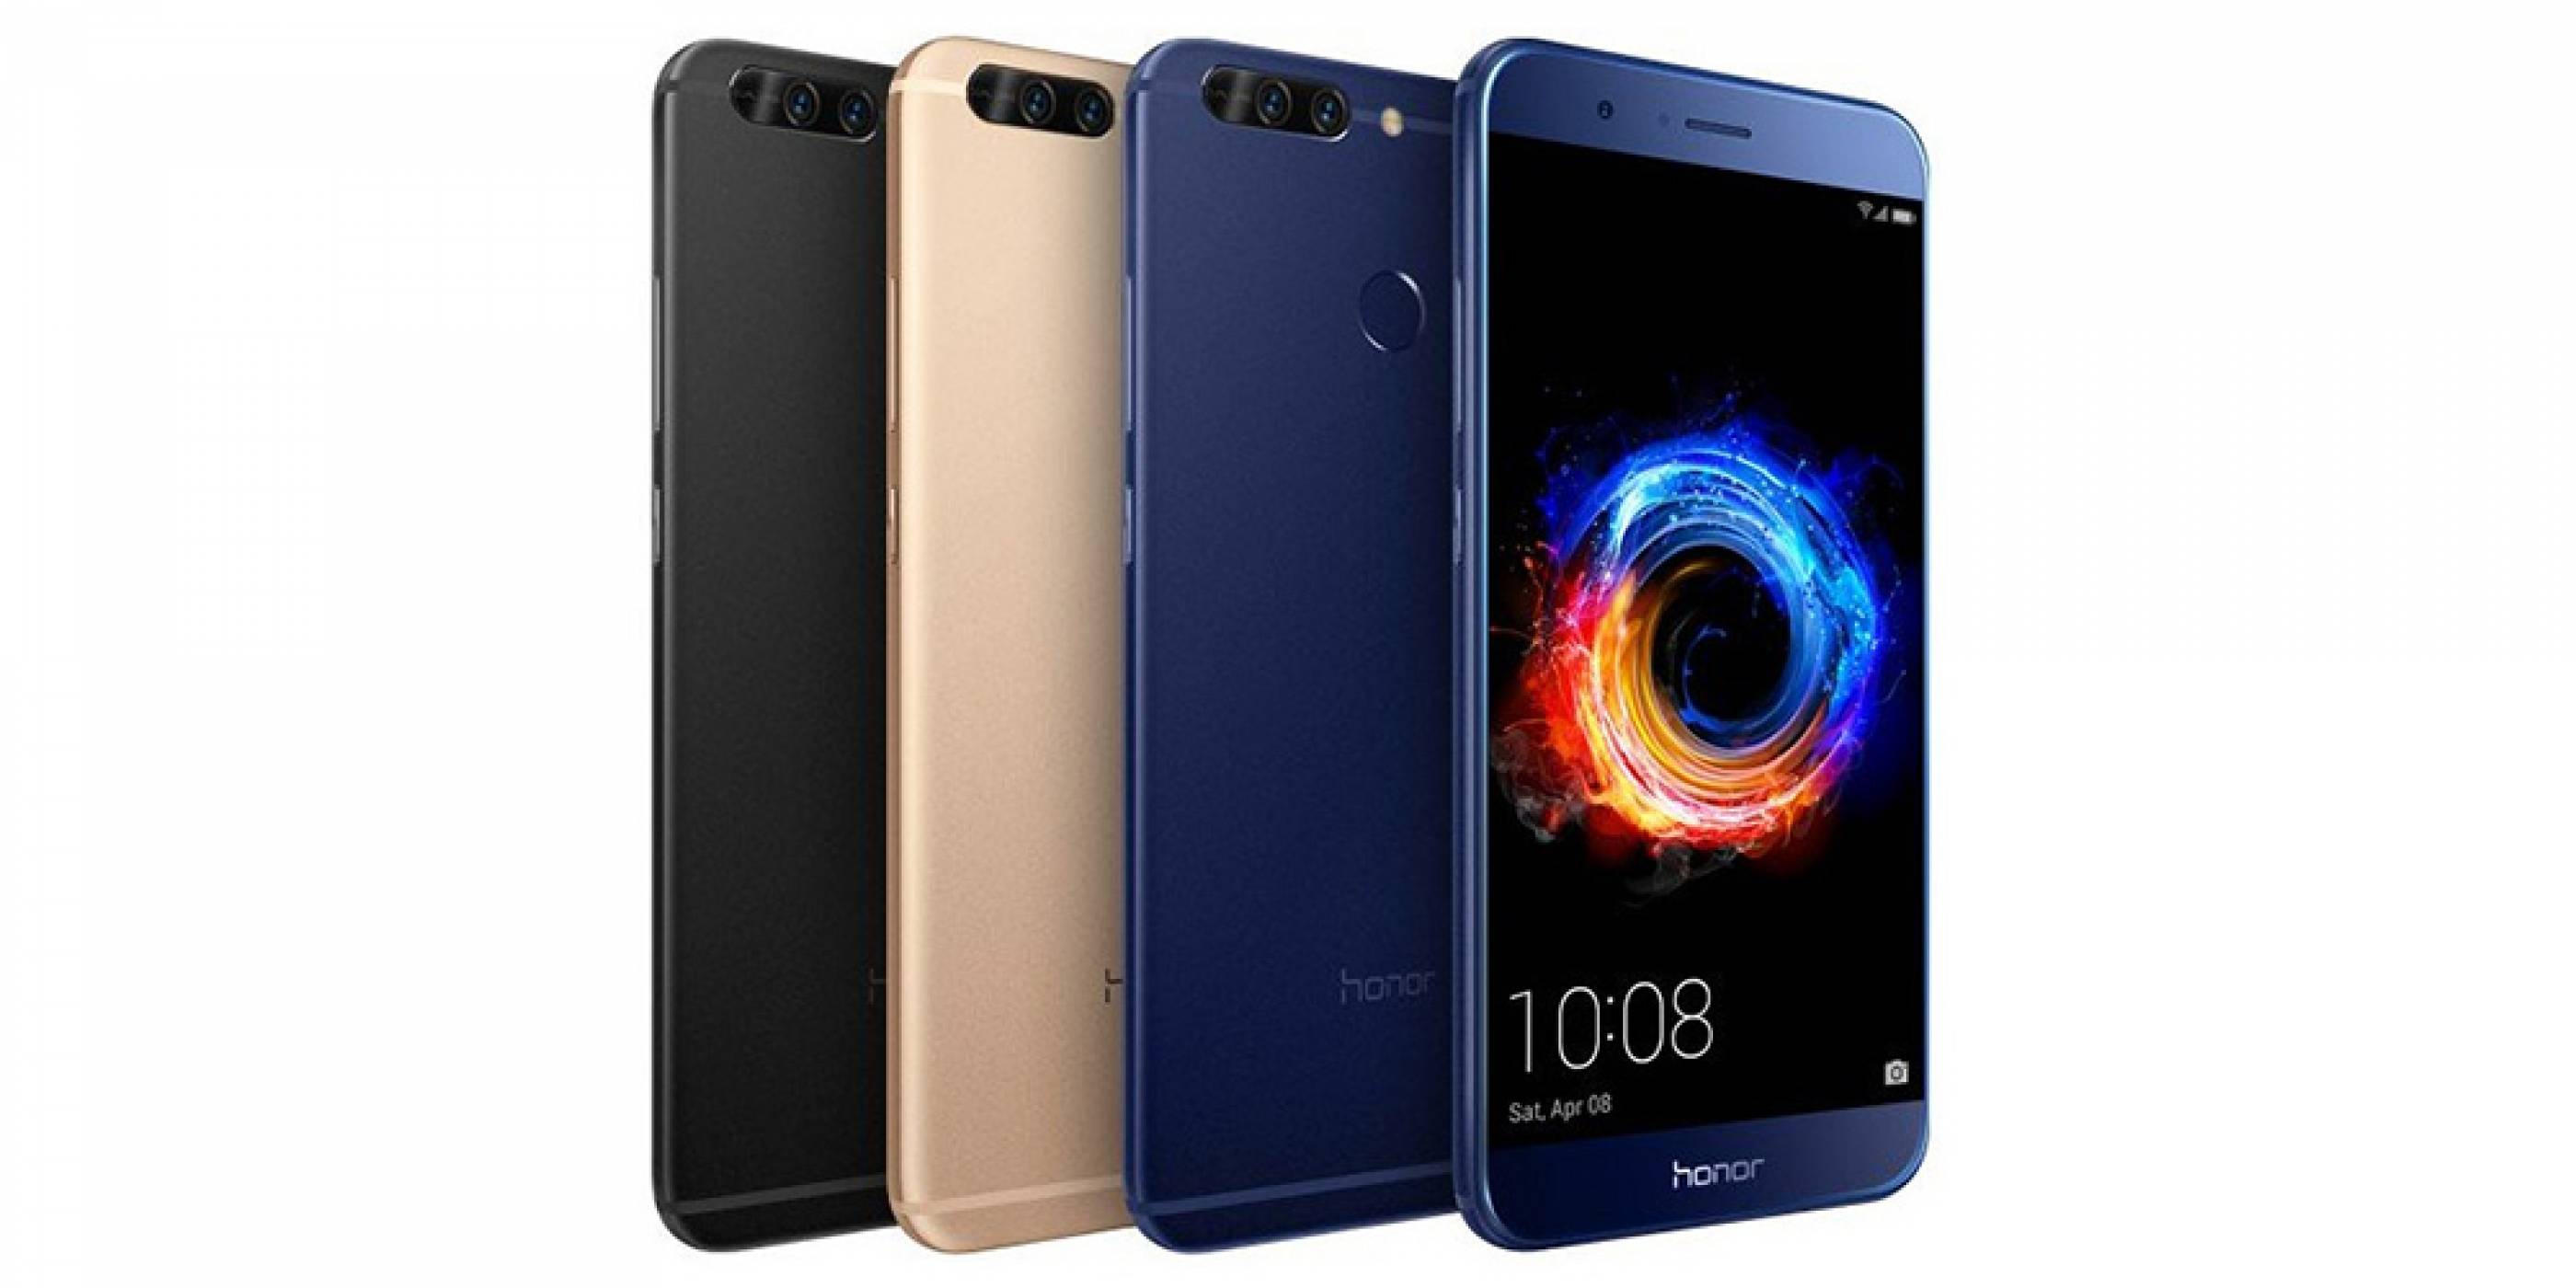 Honor 8 11. Huawei Honor 8 Pro. Huawei 8 Pro. Honor 8 Pro v9. Honor 8 2017.